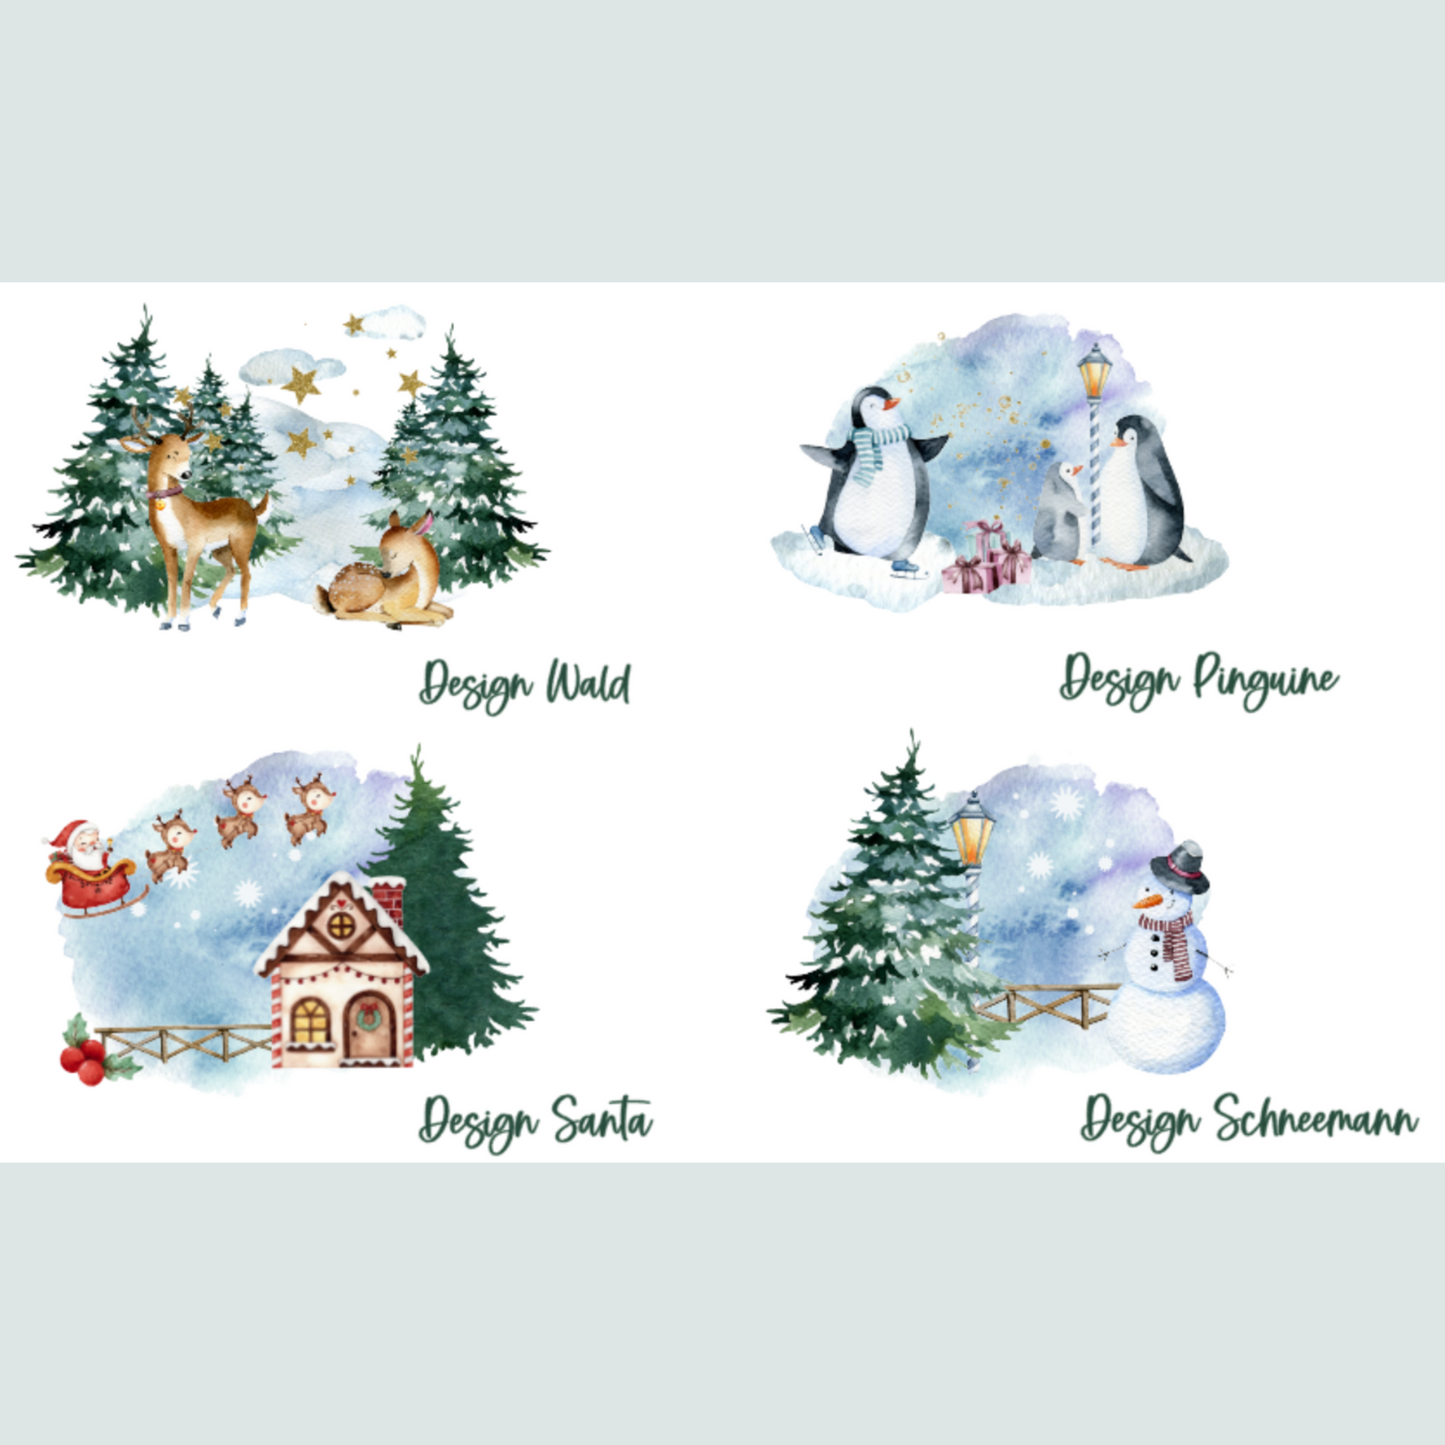 personalisierter Beutel für Weihnachten - ideal als kleine Geschenkverpackung, für Süßigkeiten oder Geld - verschiedene Designs mit Namen